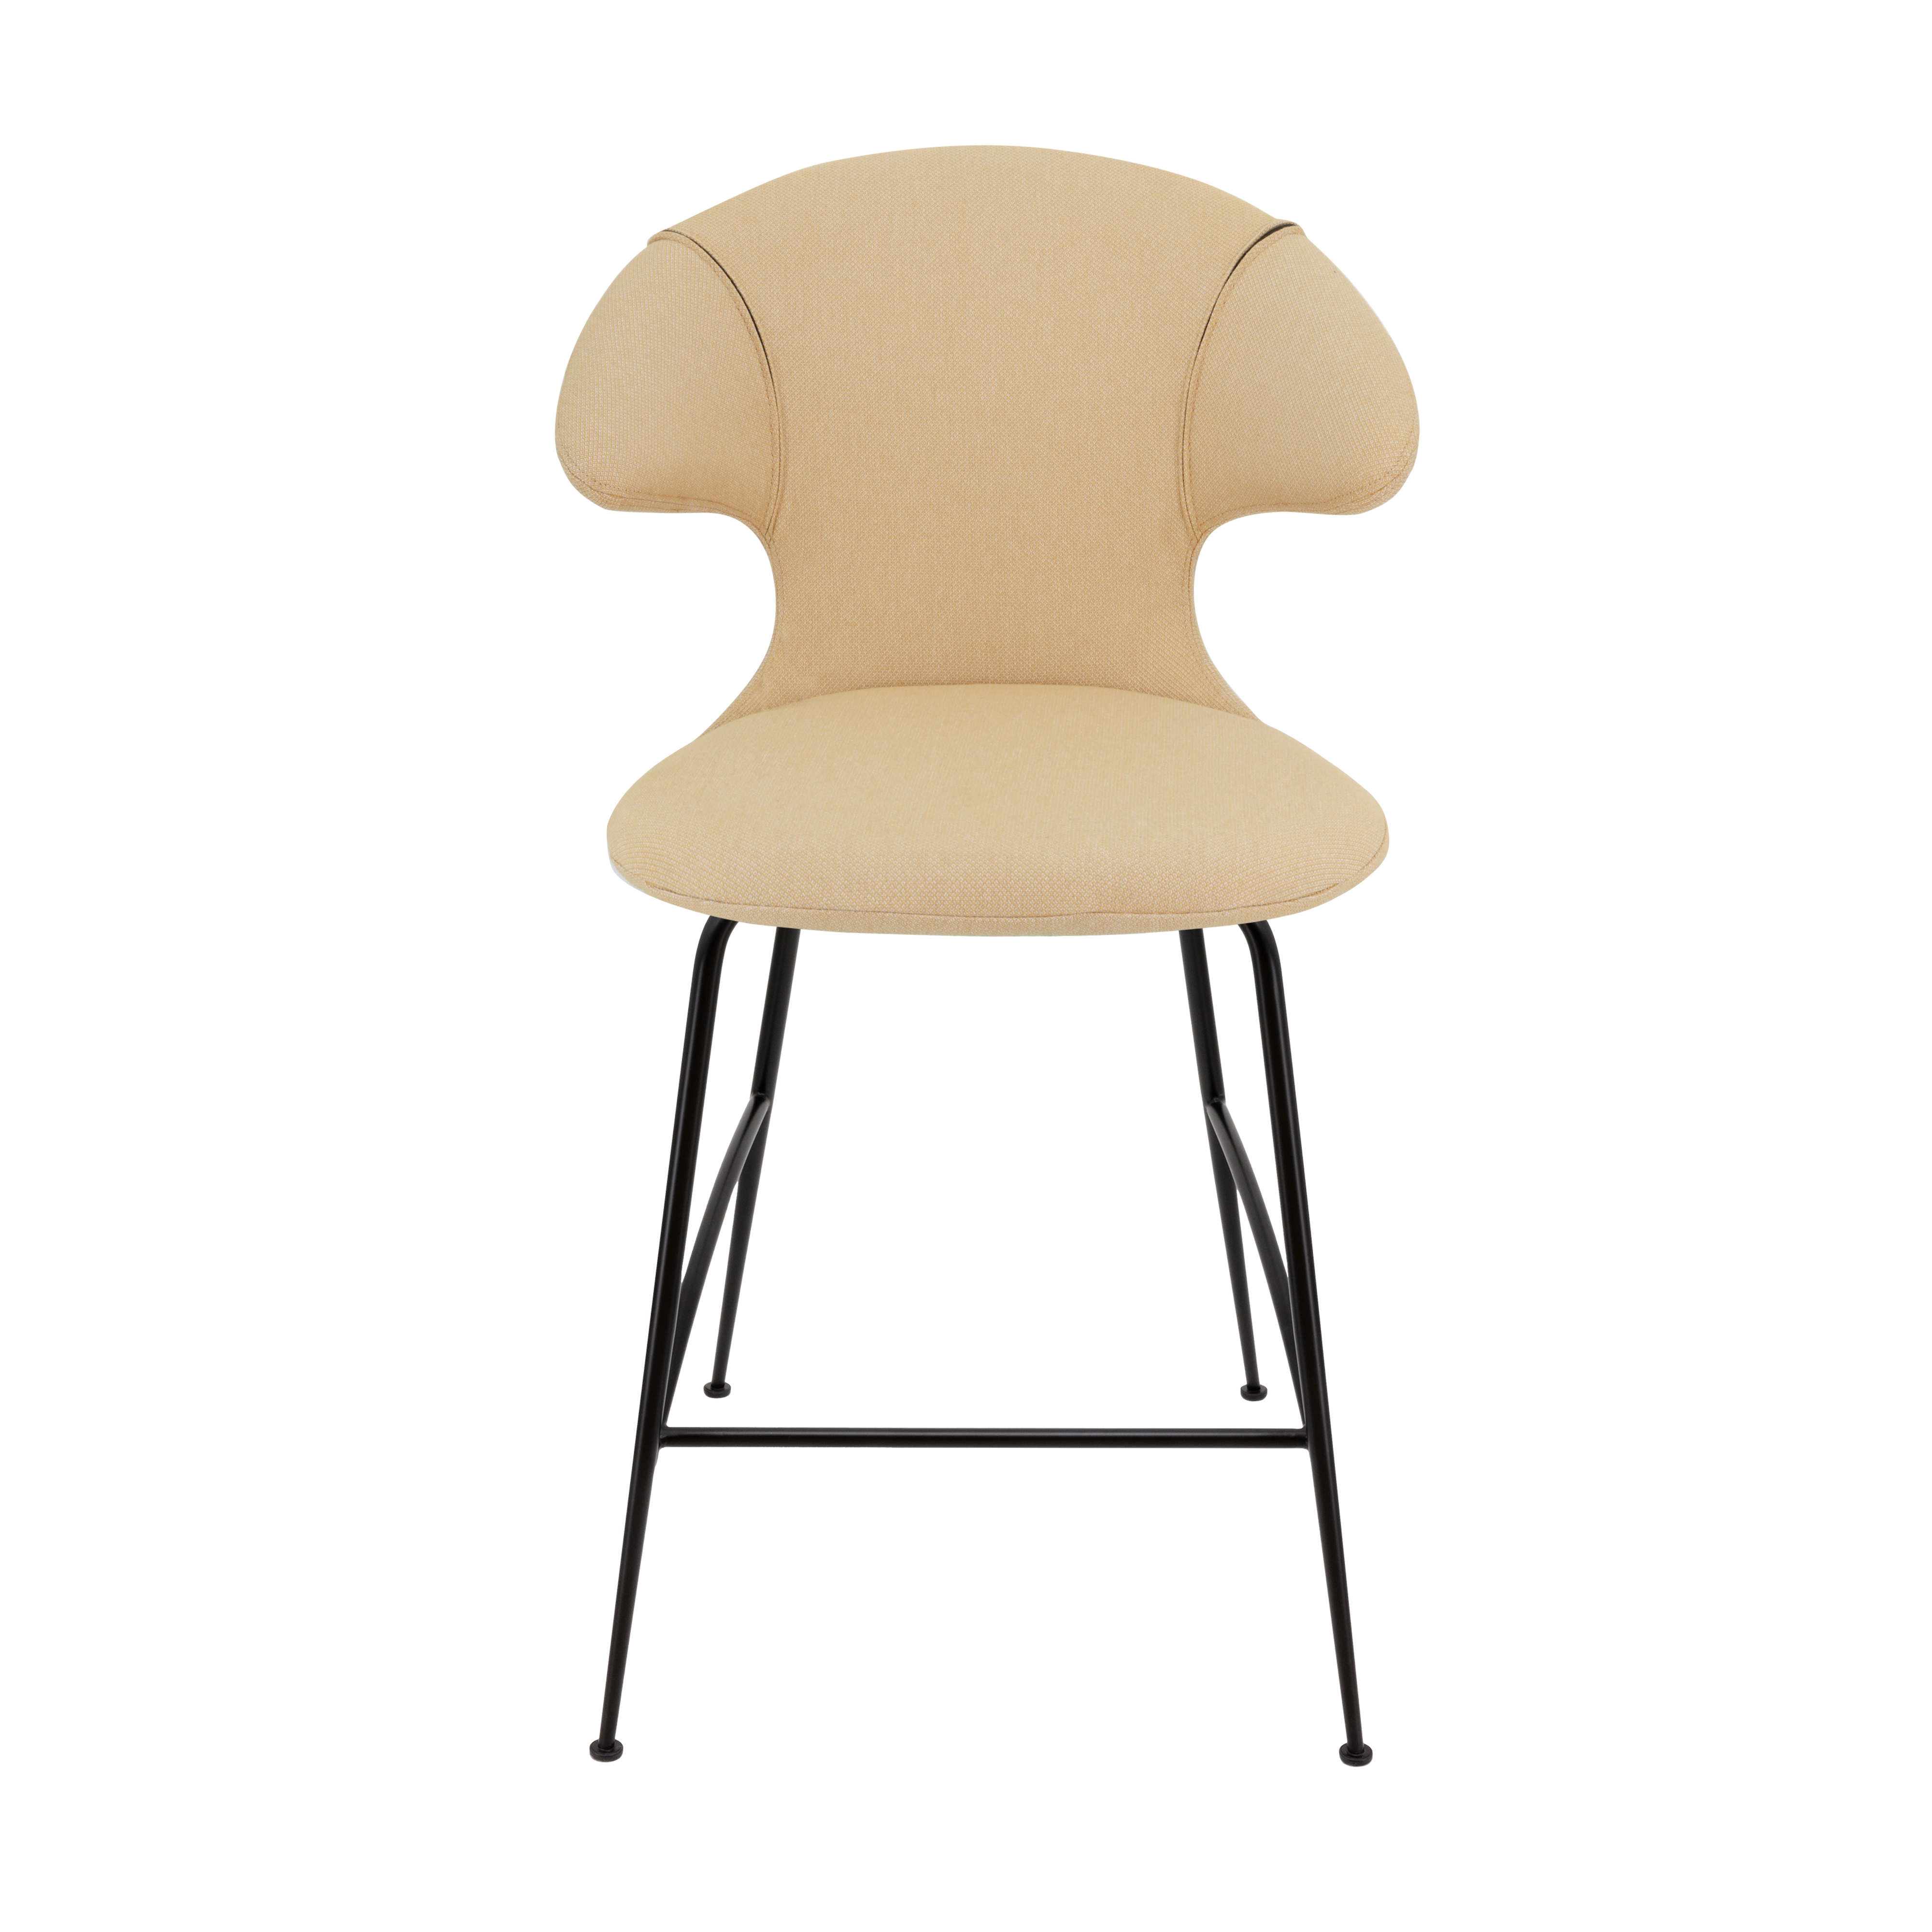 Time Flies Counter Stuhl in Summer Shine präsentiert im Onlineshop von KAQTU Design AG. Barstuhl mit Armlehne ist von Umage